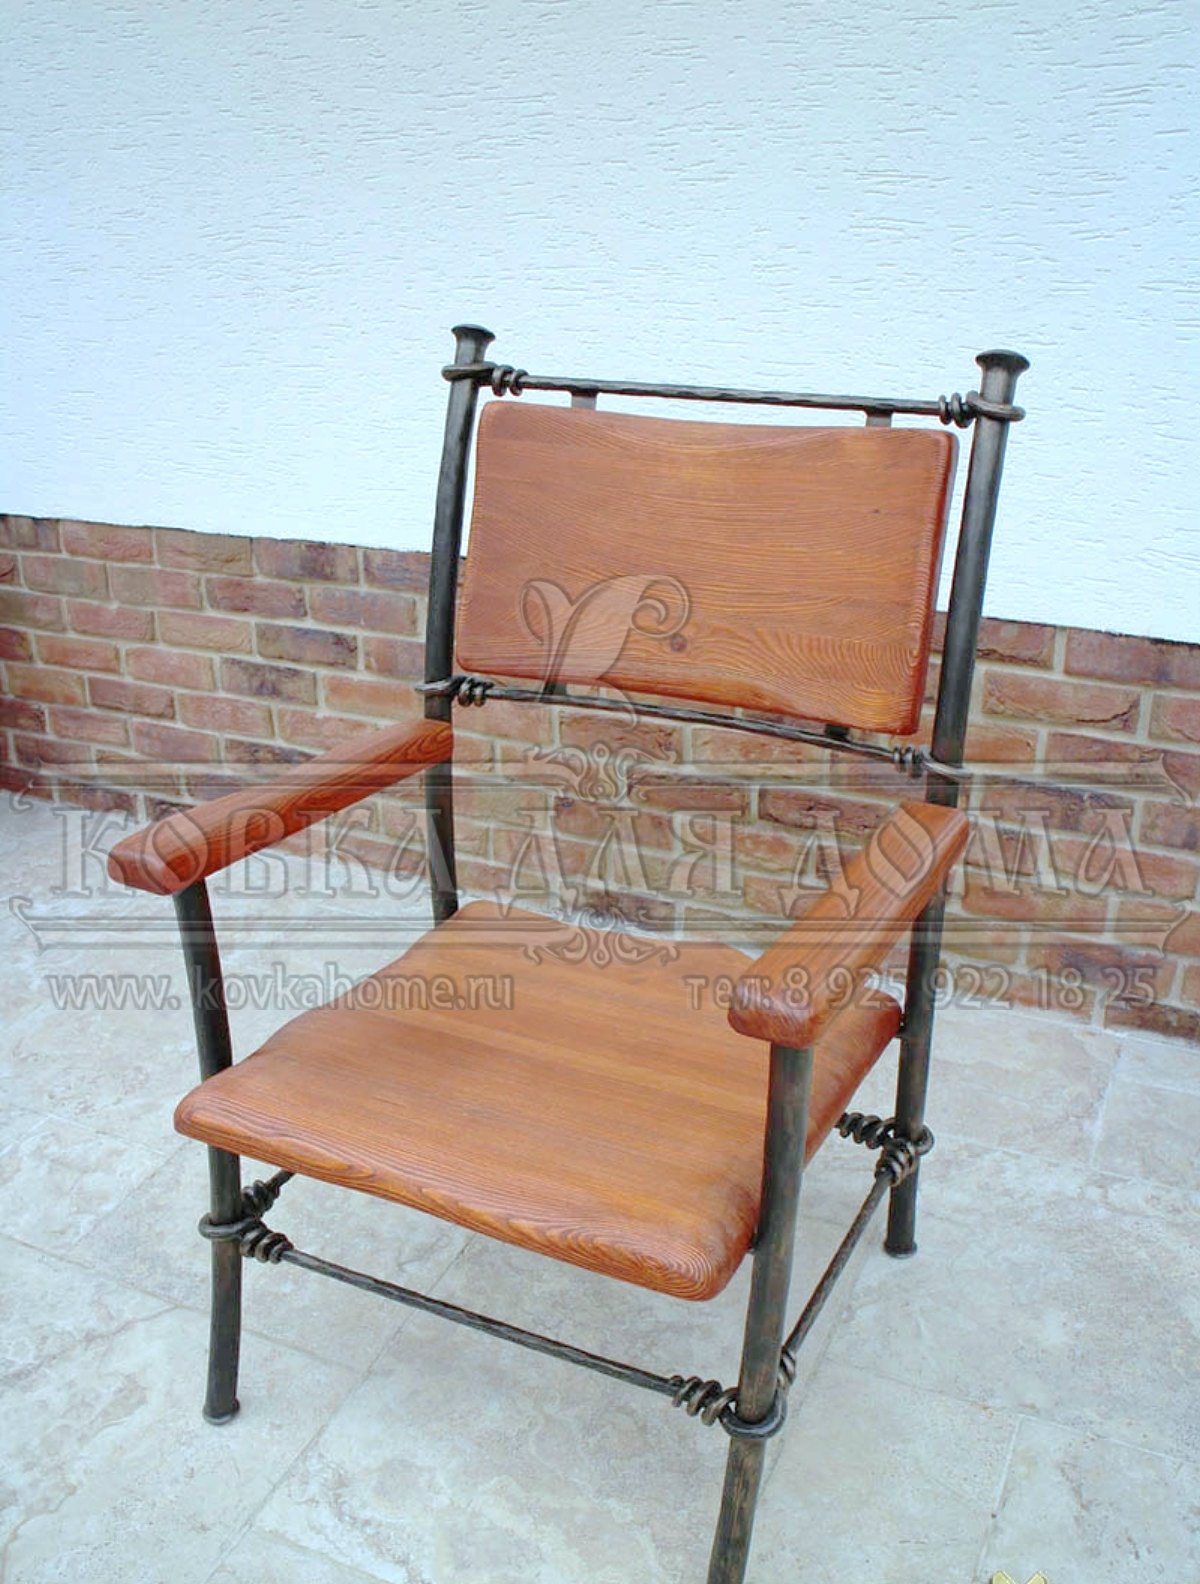 Кованое кресло очень прочное крепкое выдержит любой вес с деревянными сидушкой подлокотниками и спинкой.